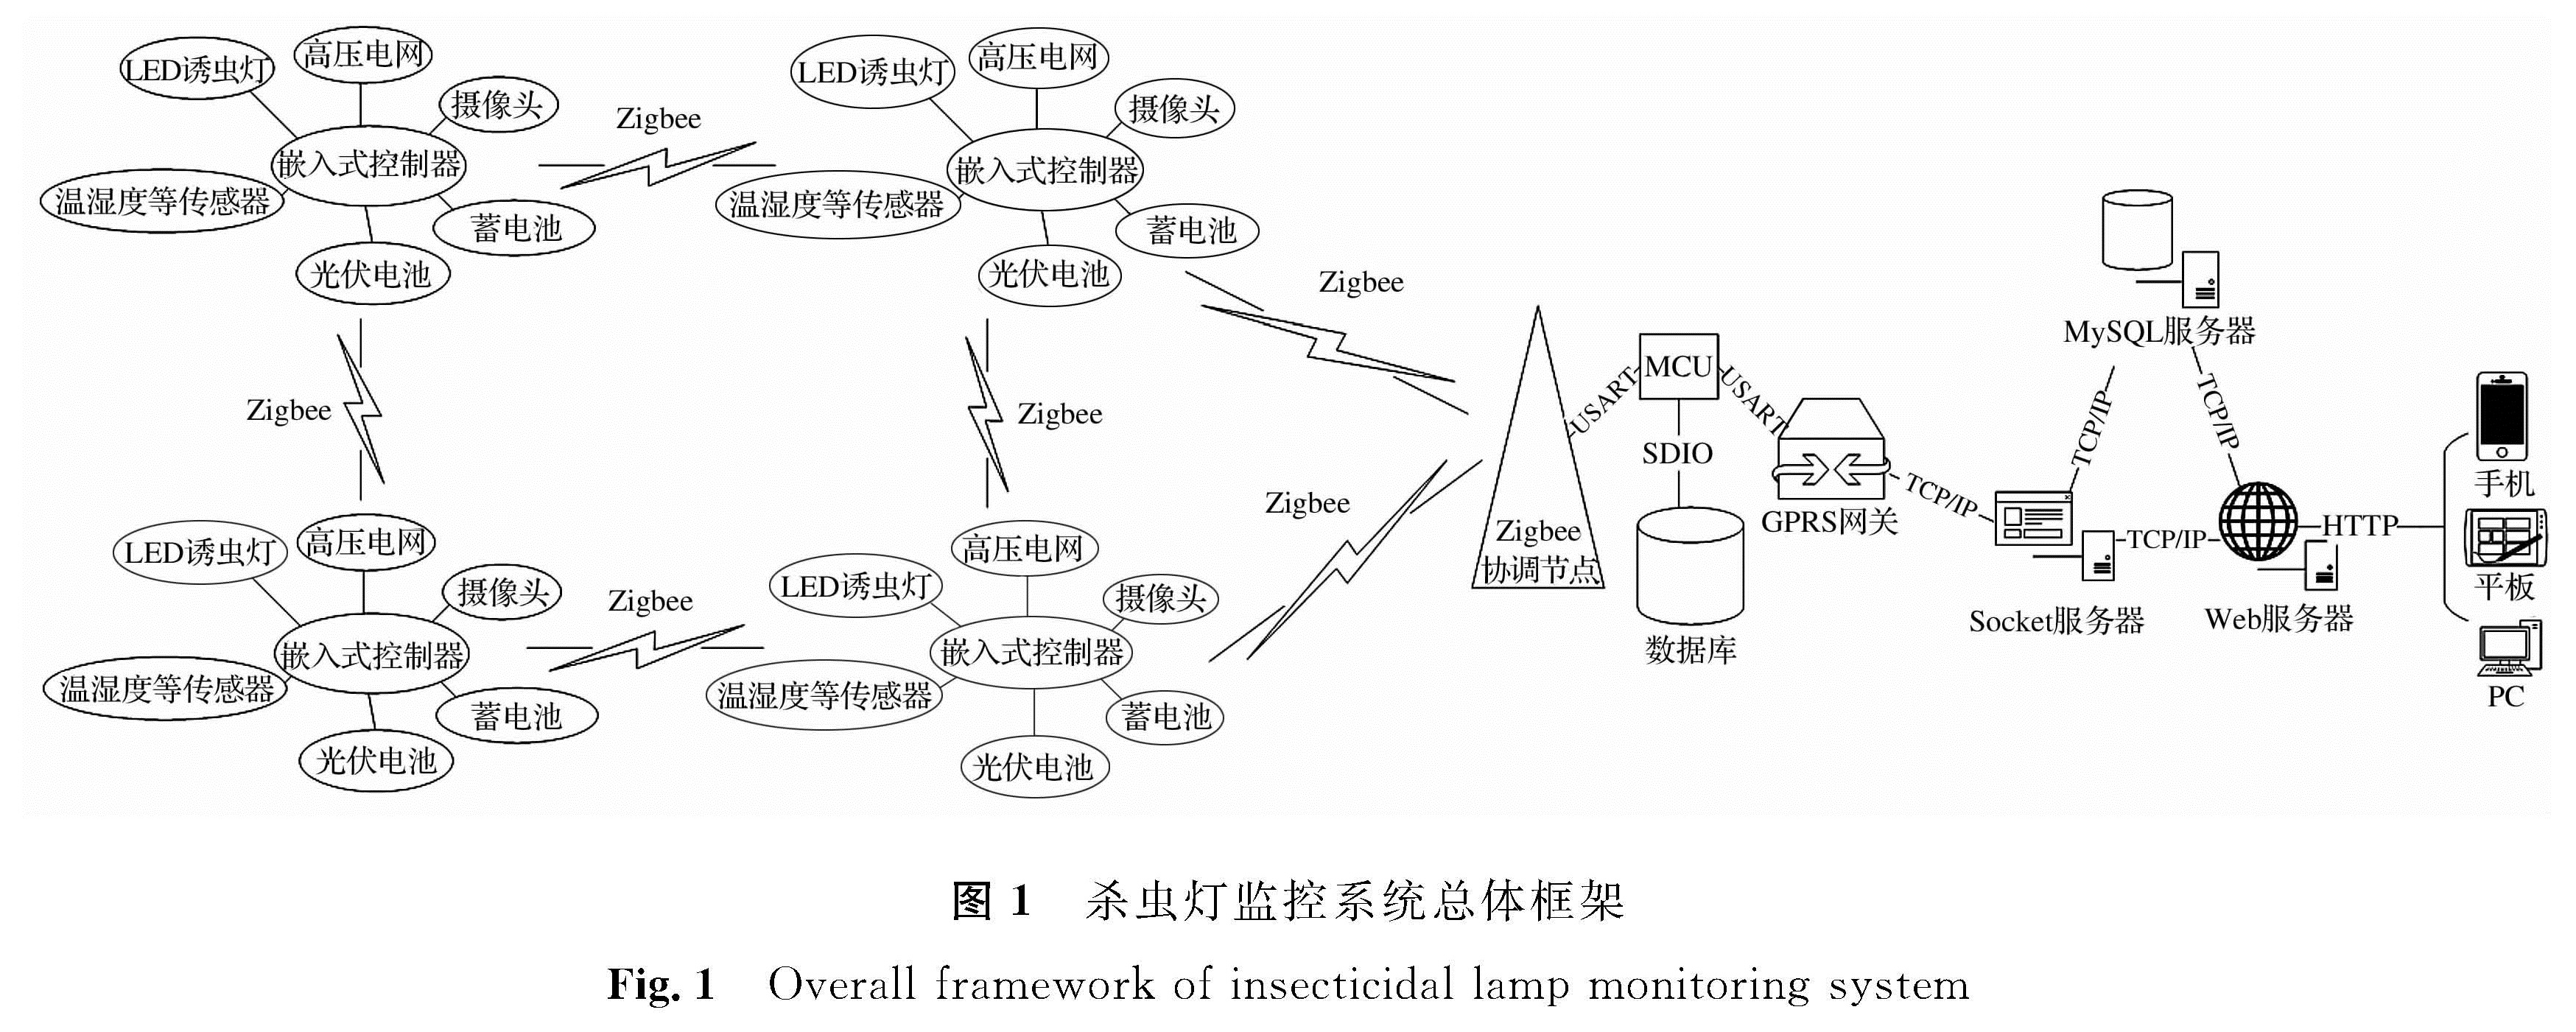 图1 杀虫灯监控系统总体框架<br/>Fig.1 Overall framework of insecticidal lamp monitoring system